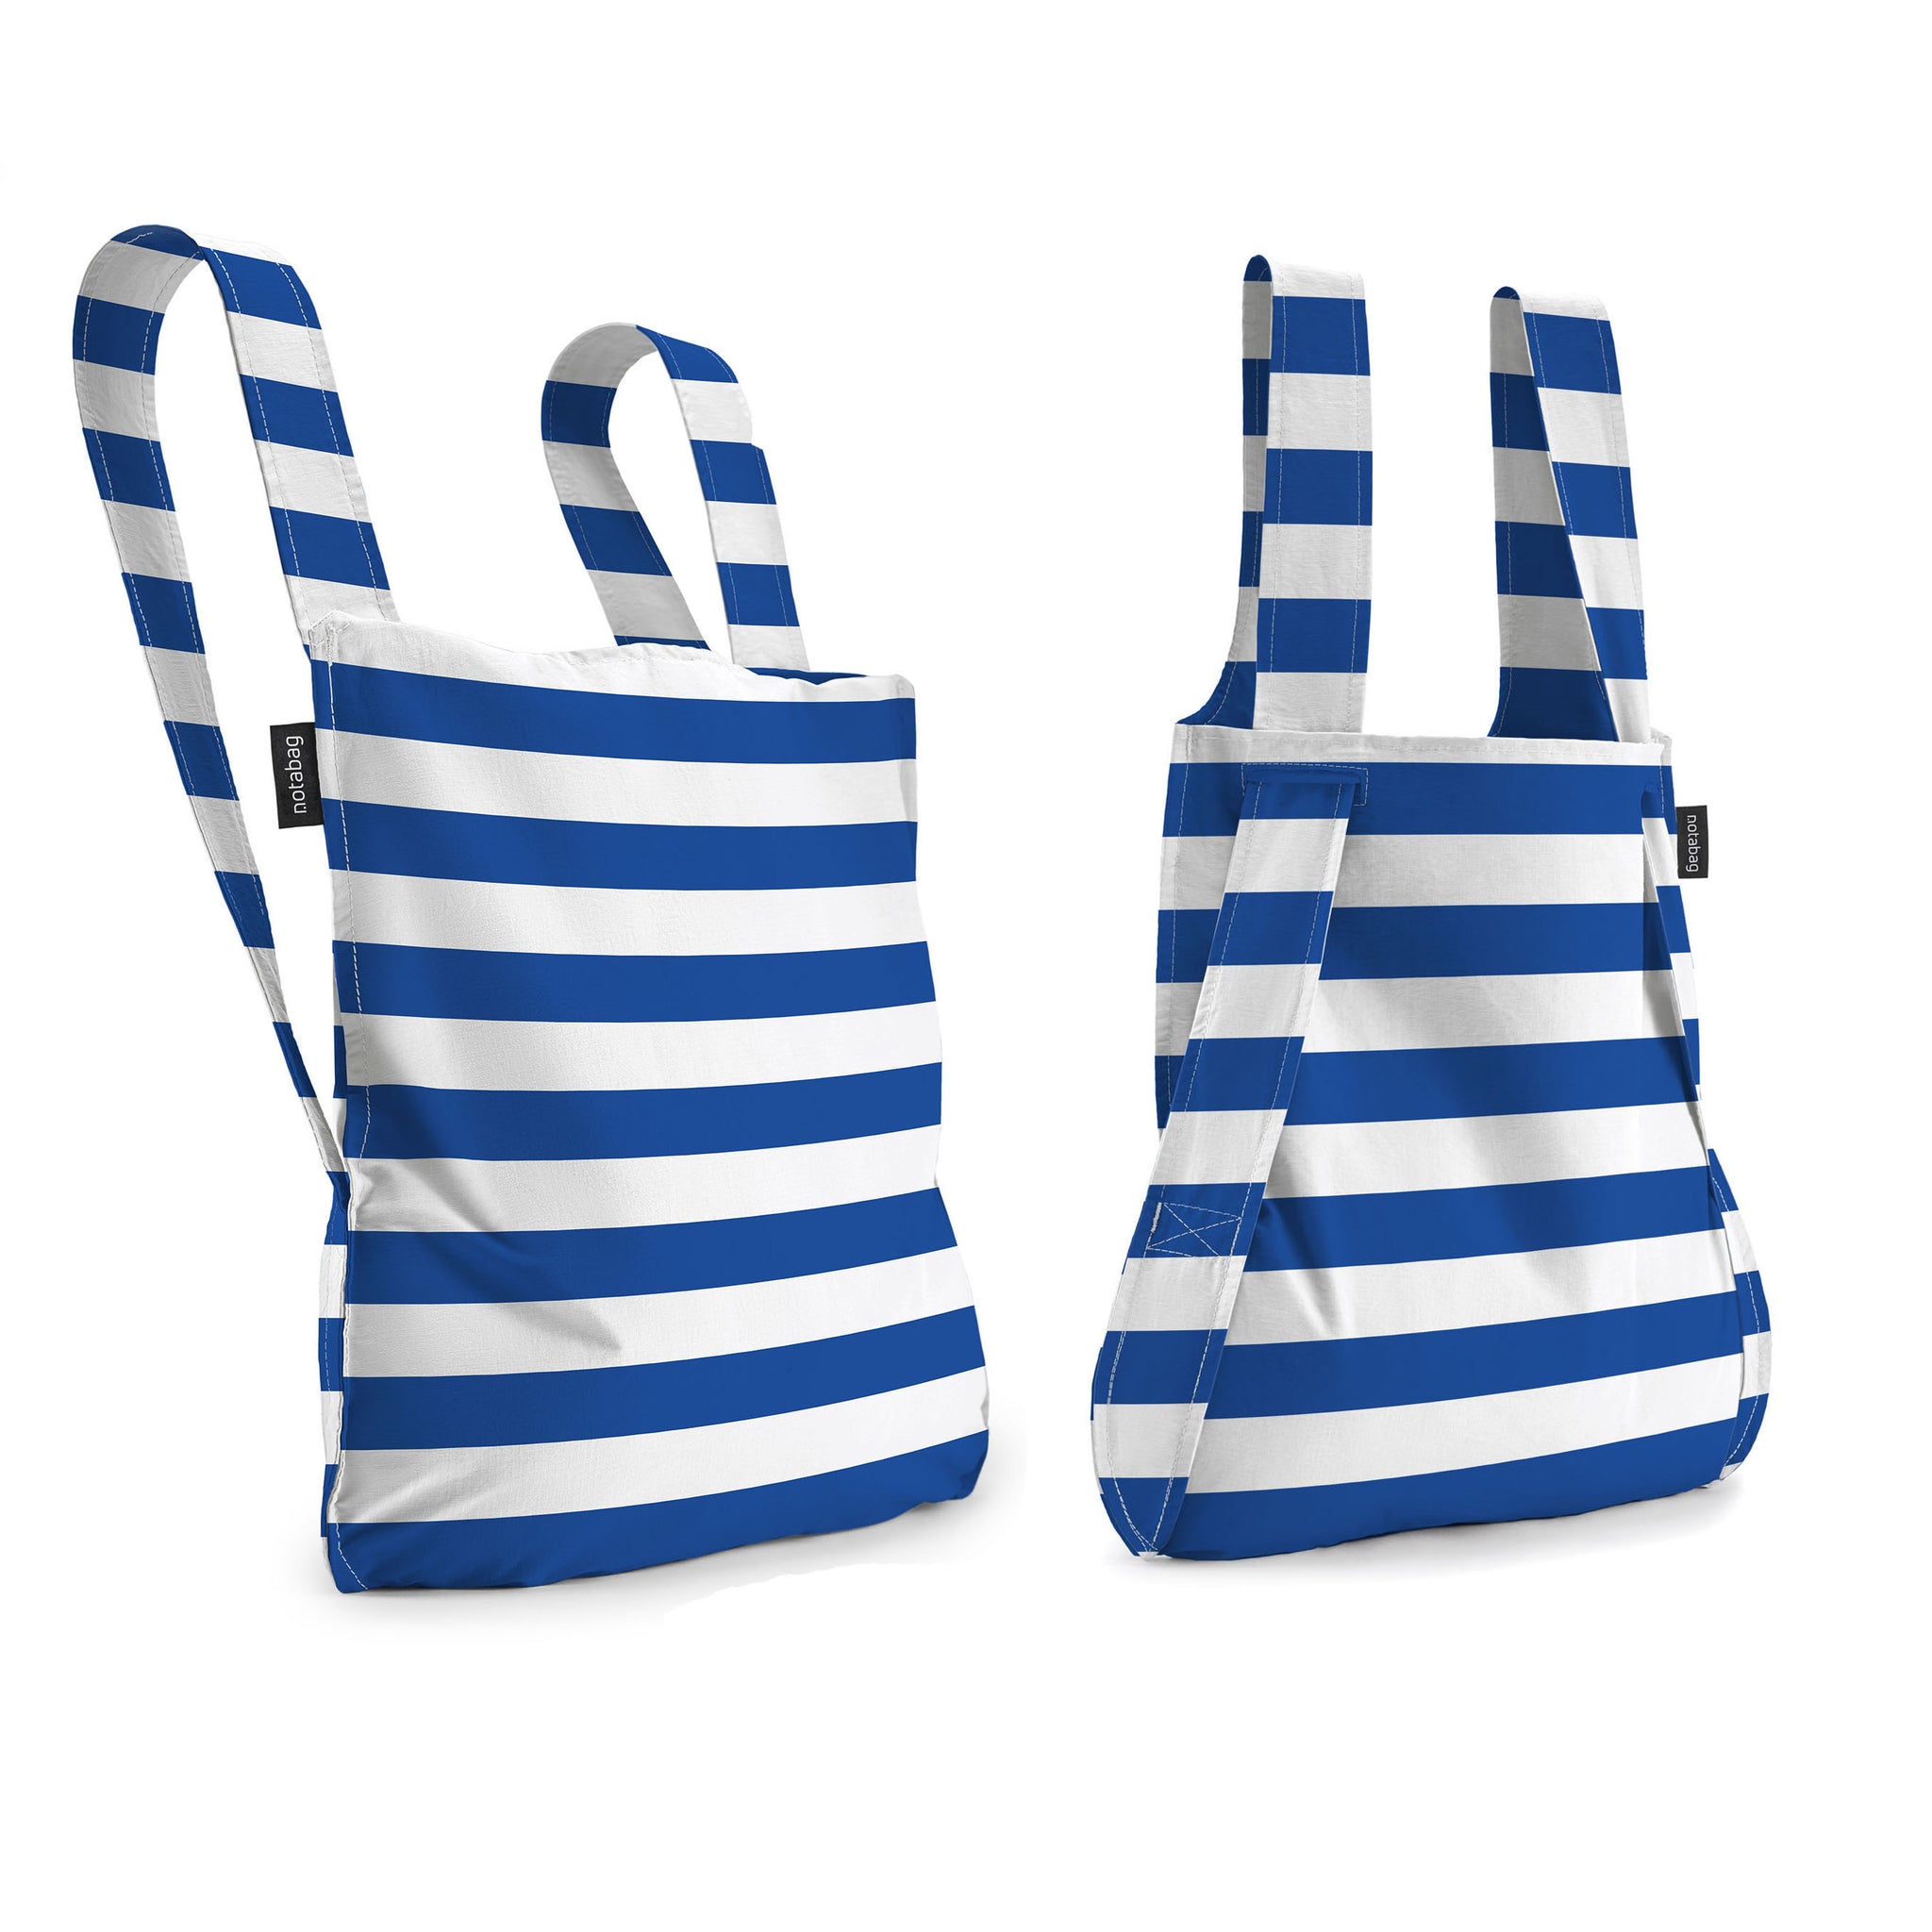 Notabag • Rugzak en tas in 1 • Notabag is de perfecte tas voor je dagelijkse gebruik! Een super handige combinatie tussen een tas en een rugzak. Door aan de draagbanden te trekken verandert hij van een shopper in een rugzak, en andersom. Altijd je handen vrij wanneer nodig!